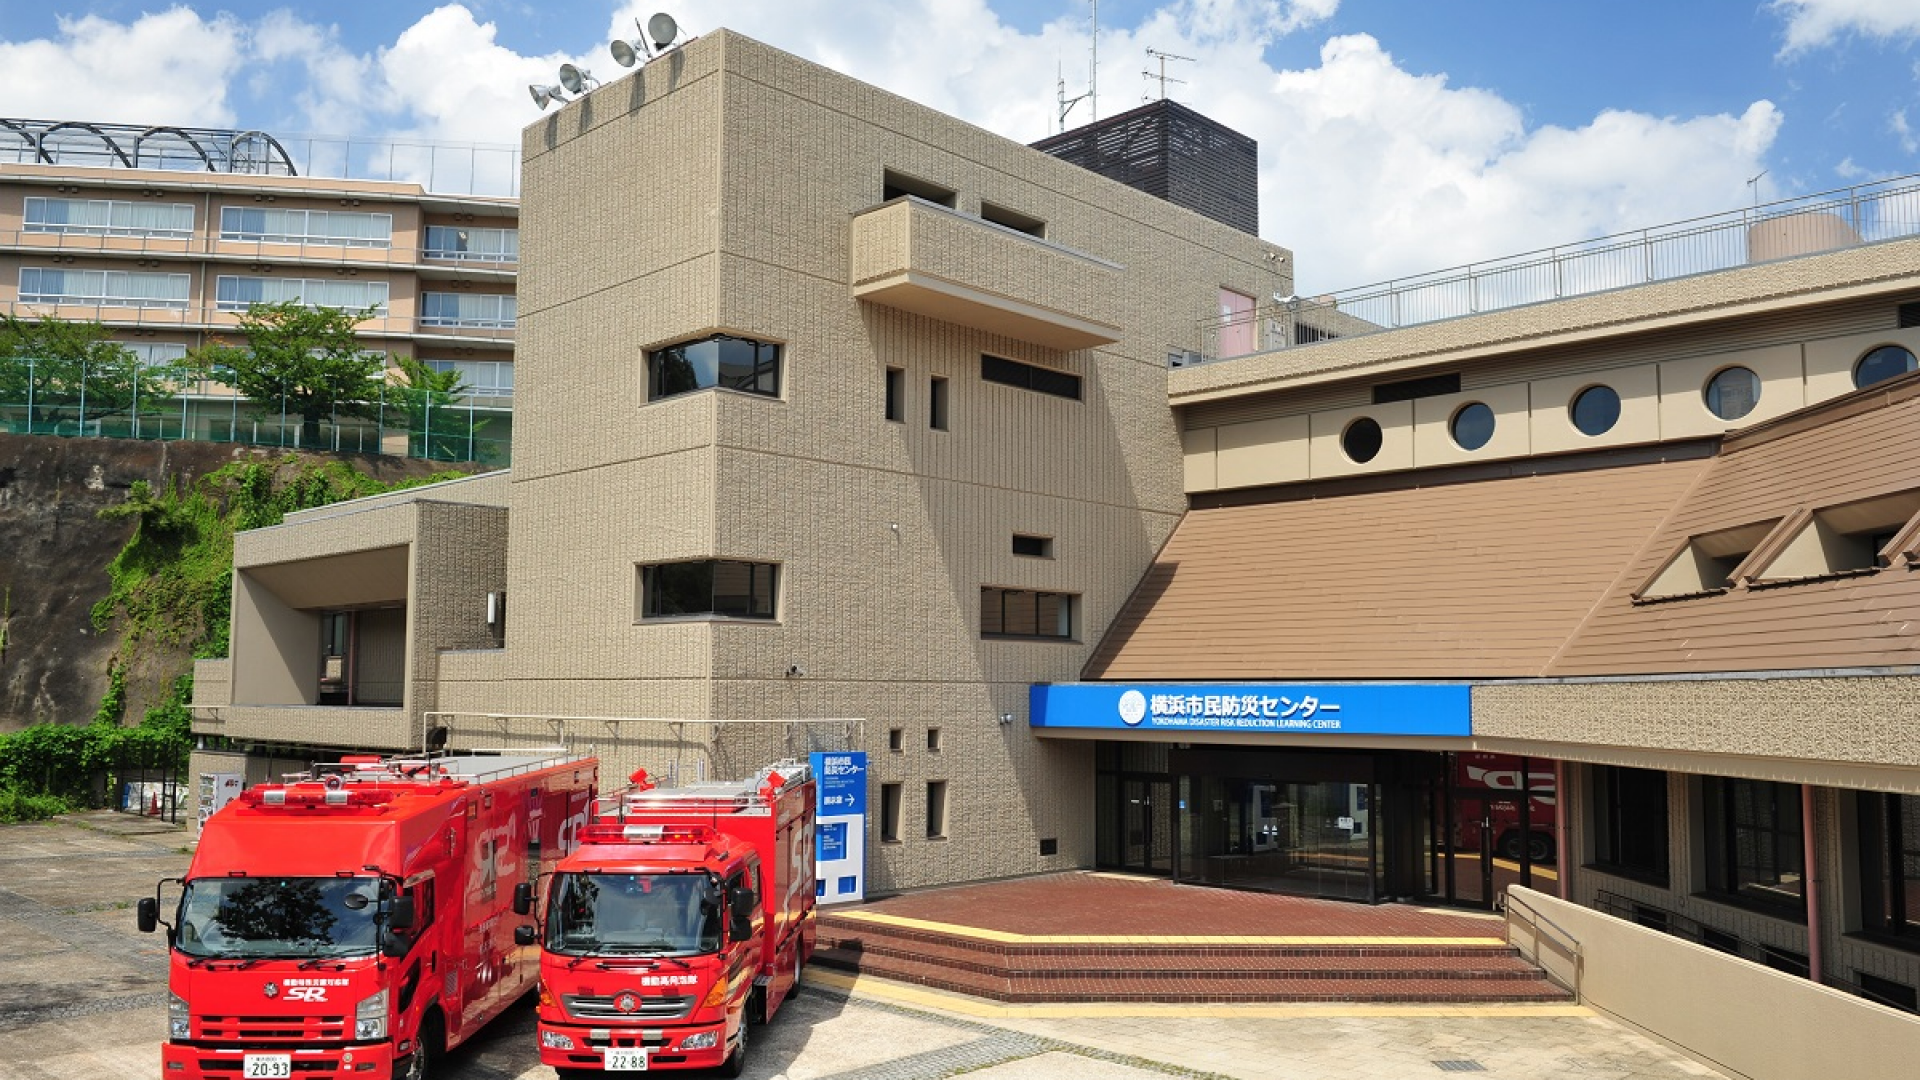 요코하마 시 방재센터 (재해 체험관)